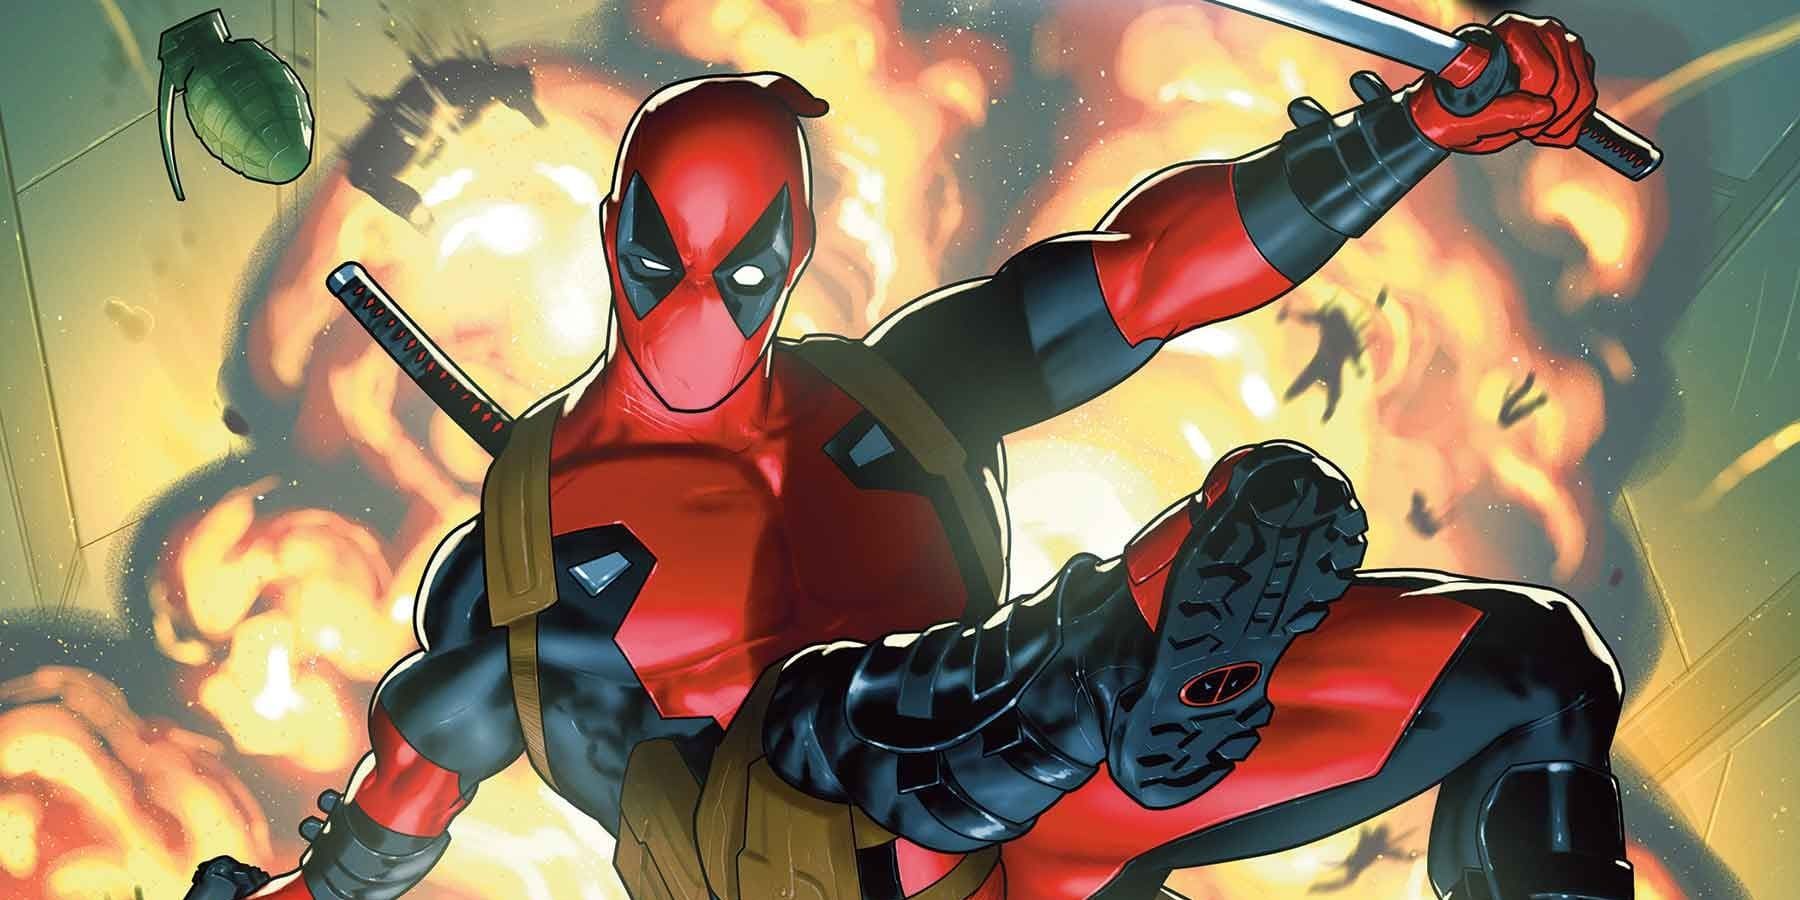 Deadpool #1 confirma que un cambio importante en la historia es permanente a medida que comienza una nueva era